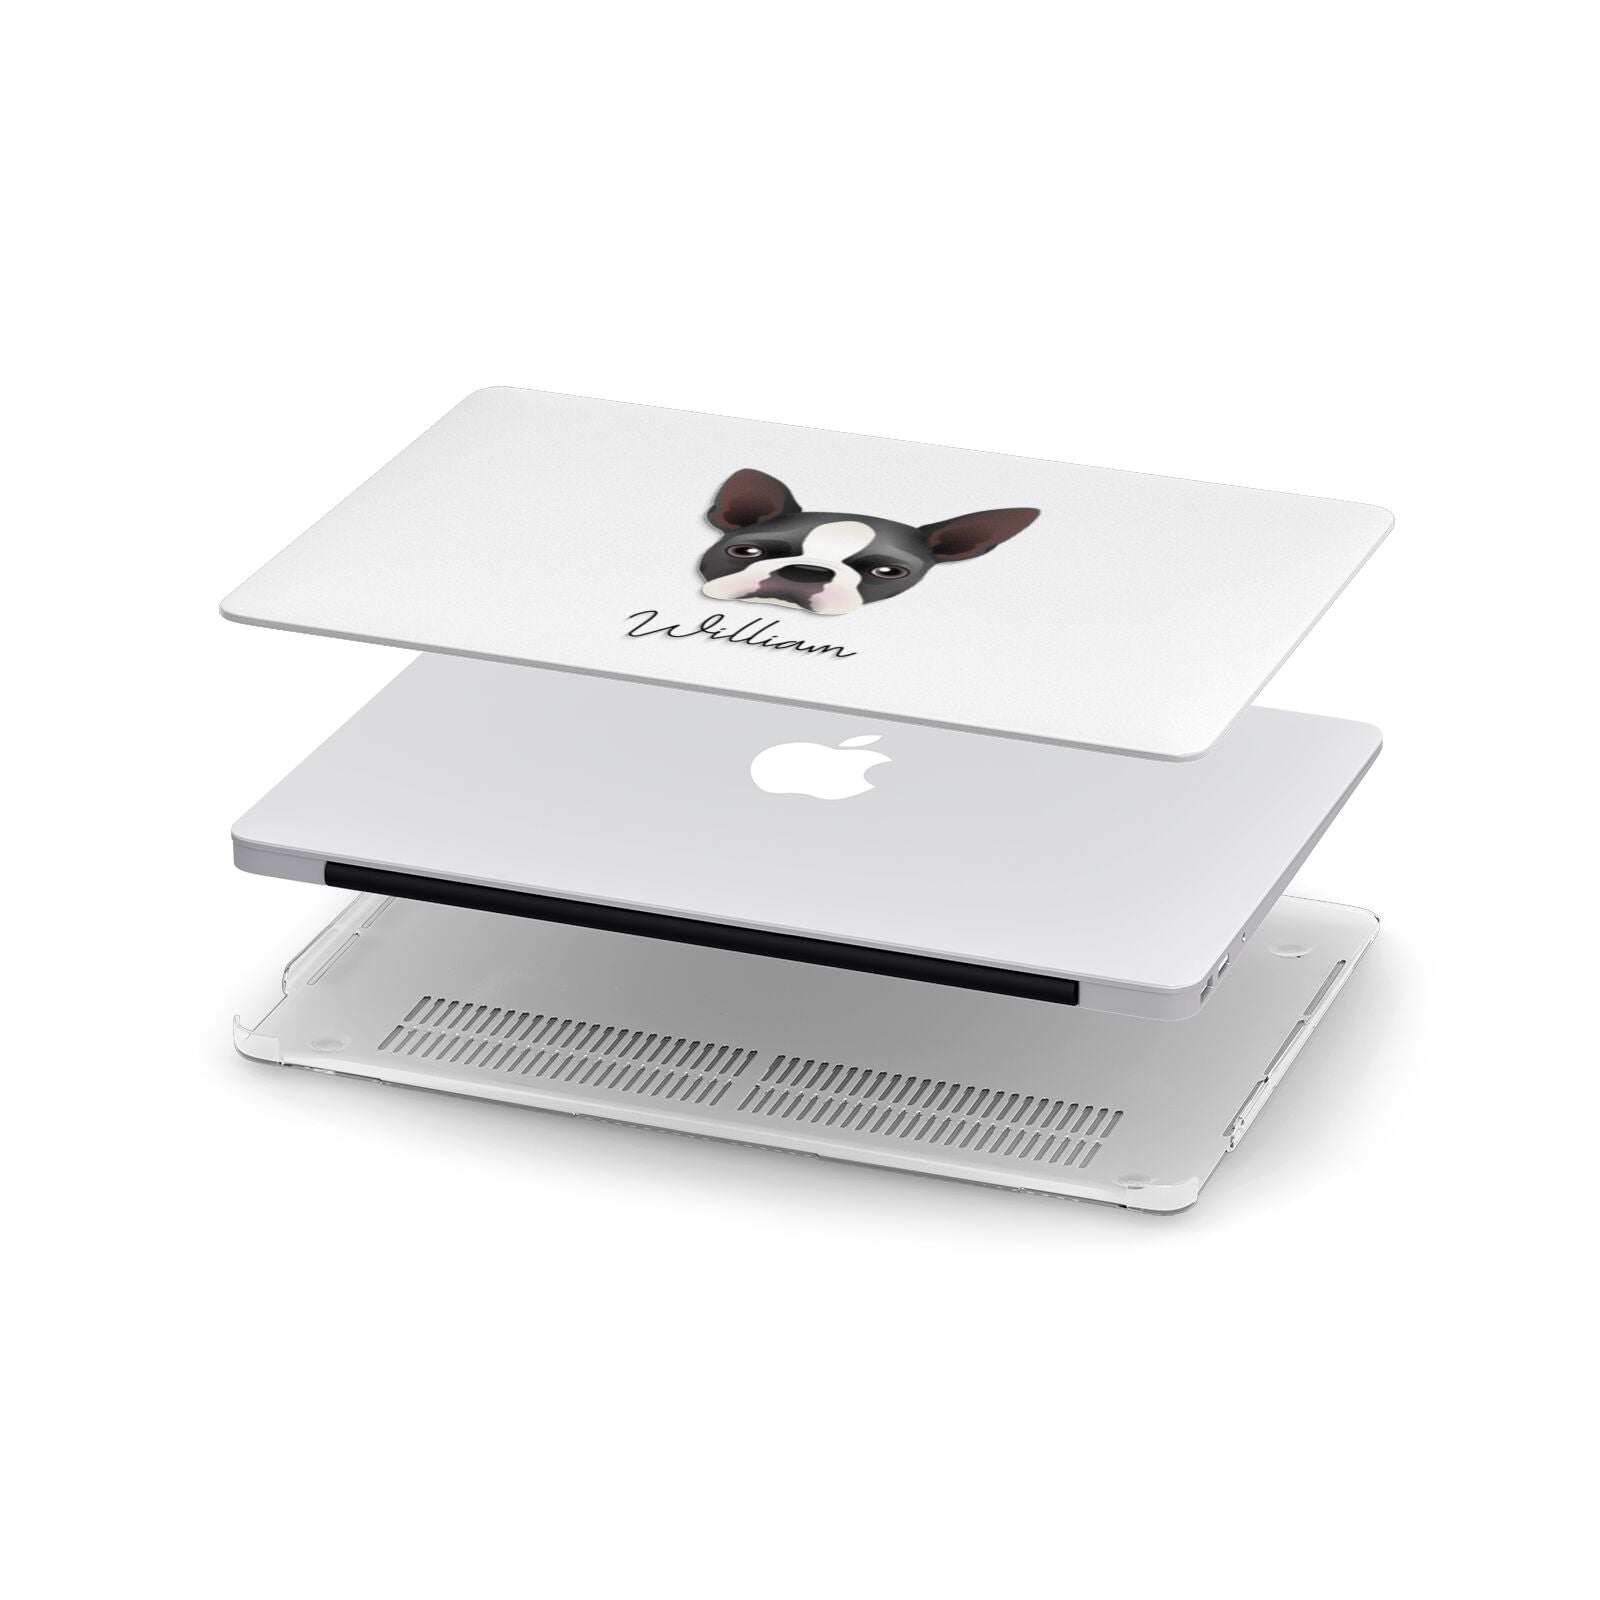 Boston Terrier Personalised Apple MacBook Case in Detail